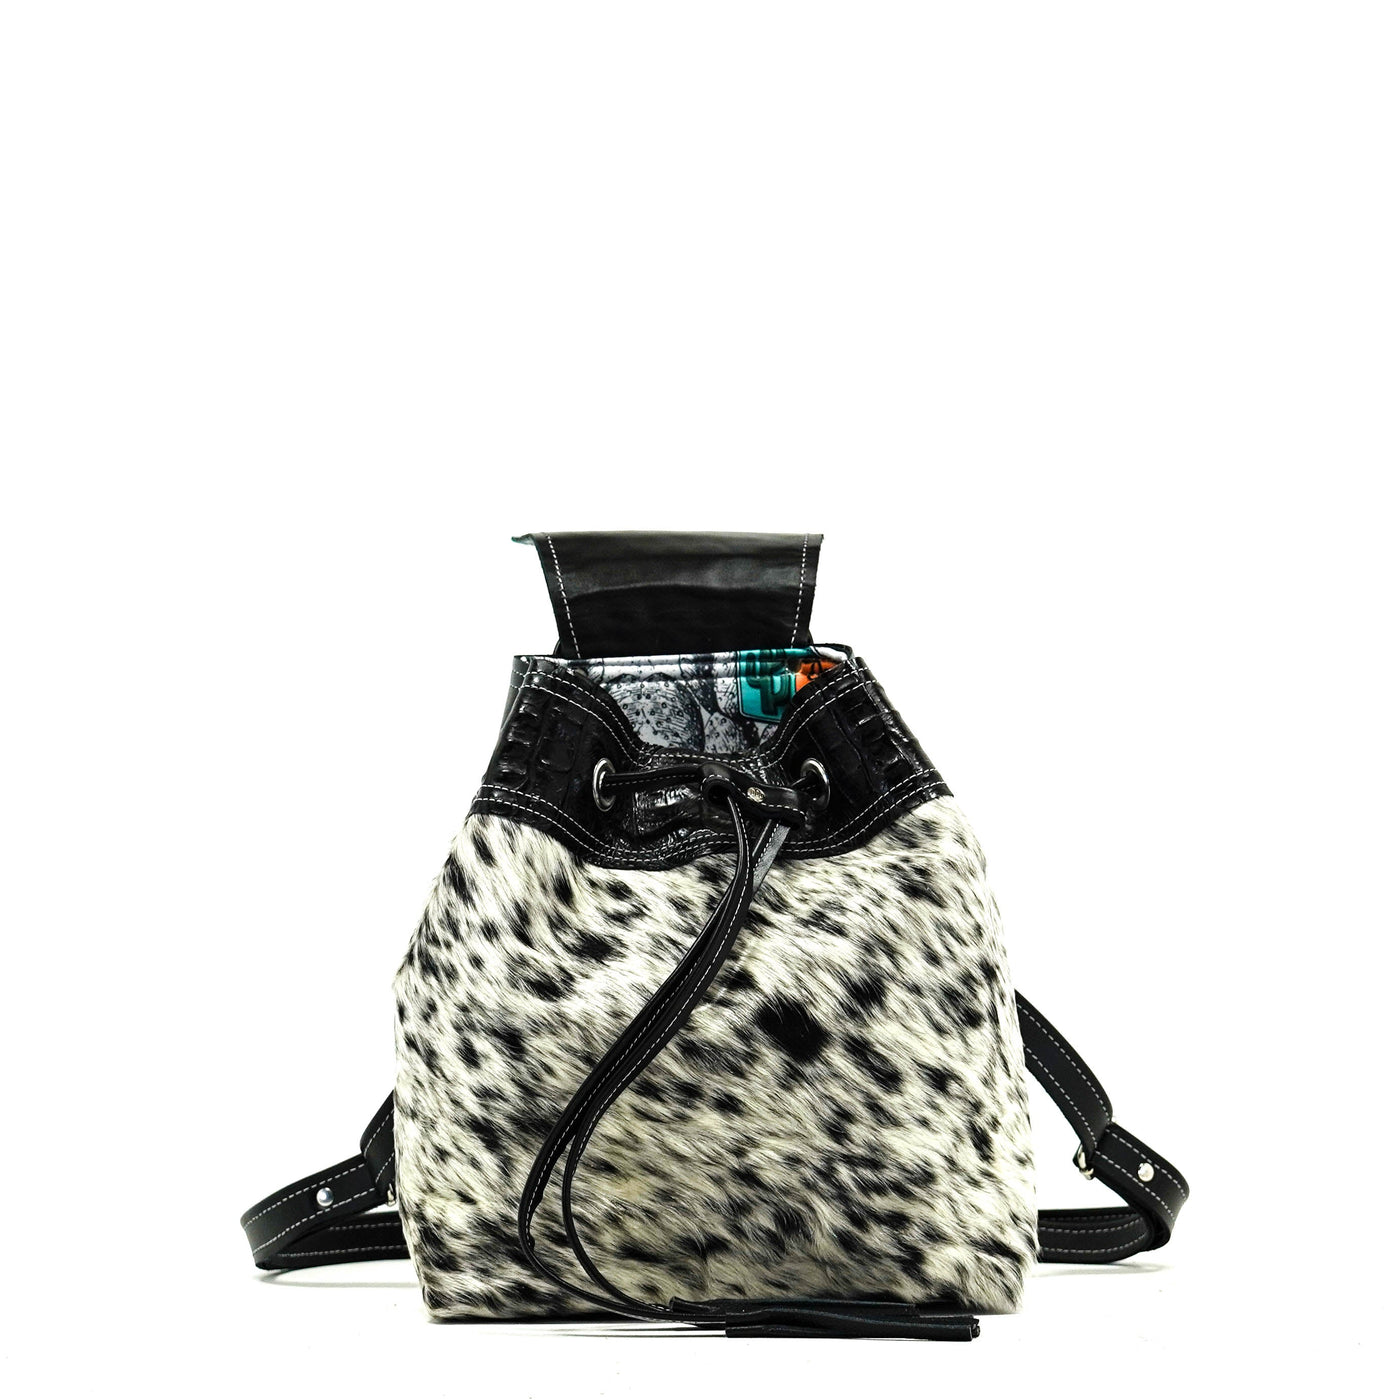 Mini Kelsea Backpack - Black & White w/ Onyx Croc-Mini Kelsea Backpack-Western-Cowhide-Bags-Handmade-Products-Gifts-Dancing Cactus Designs